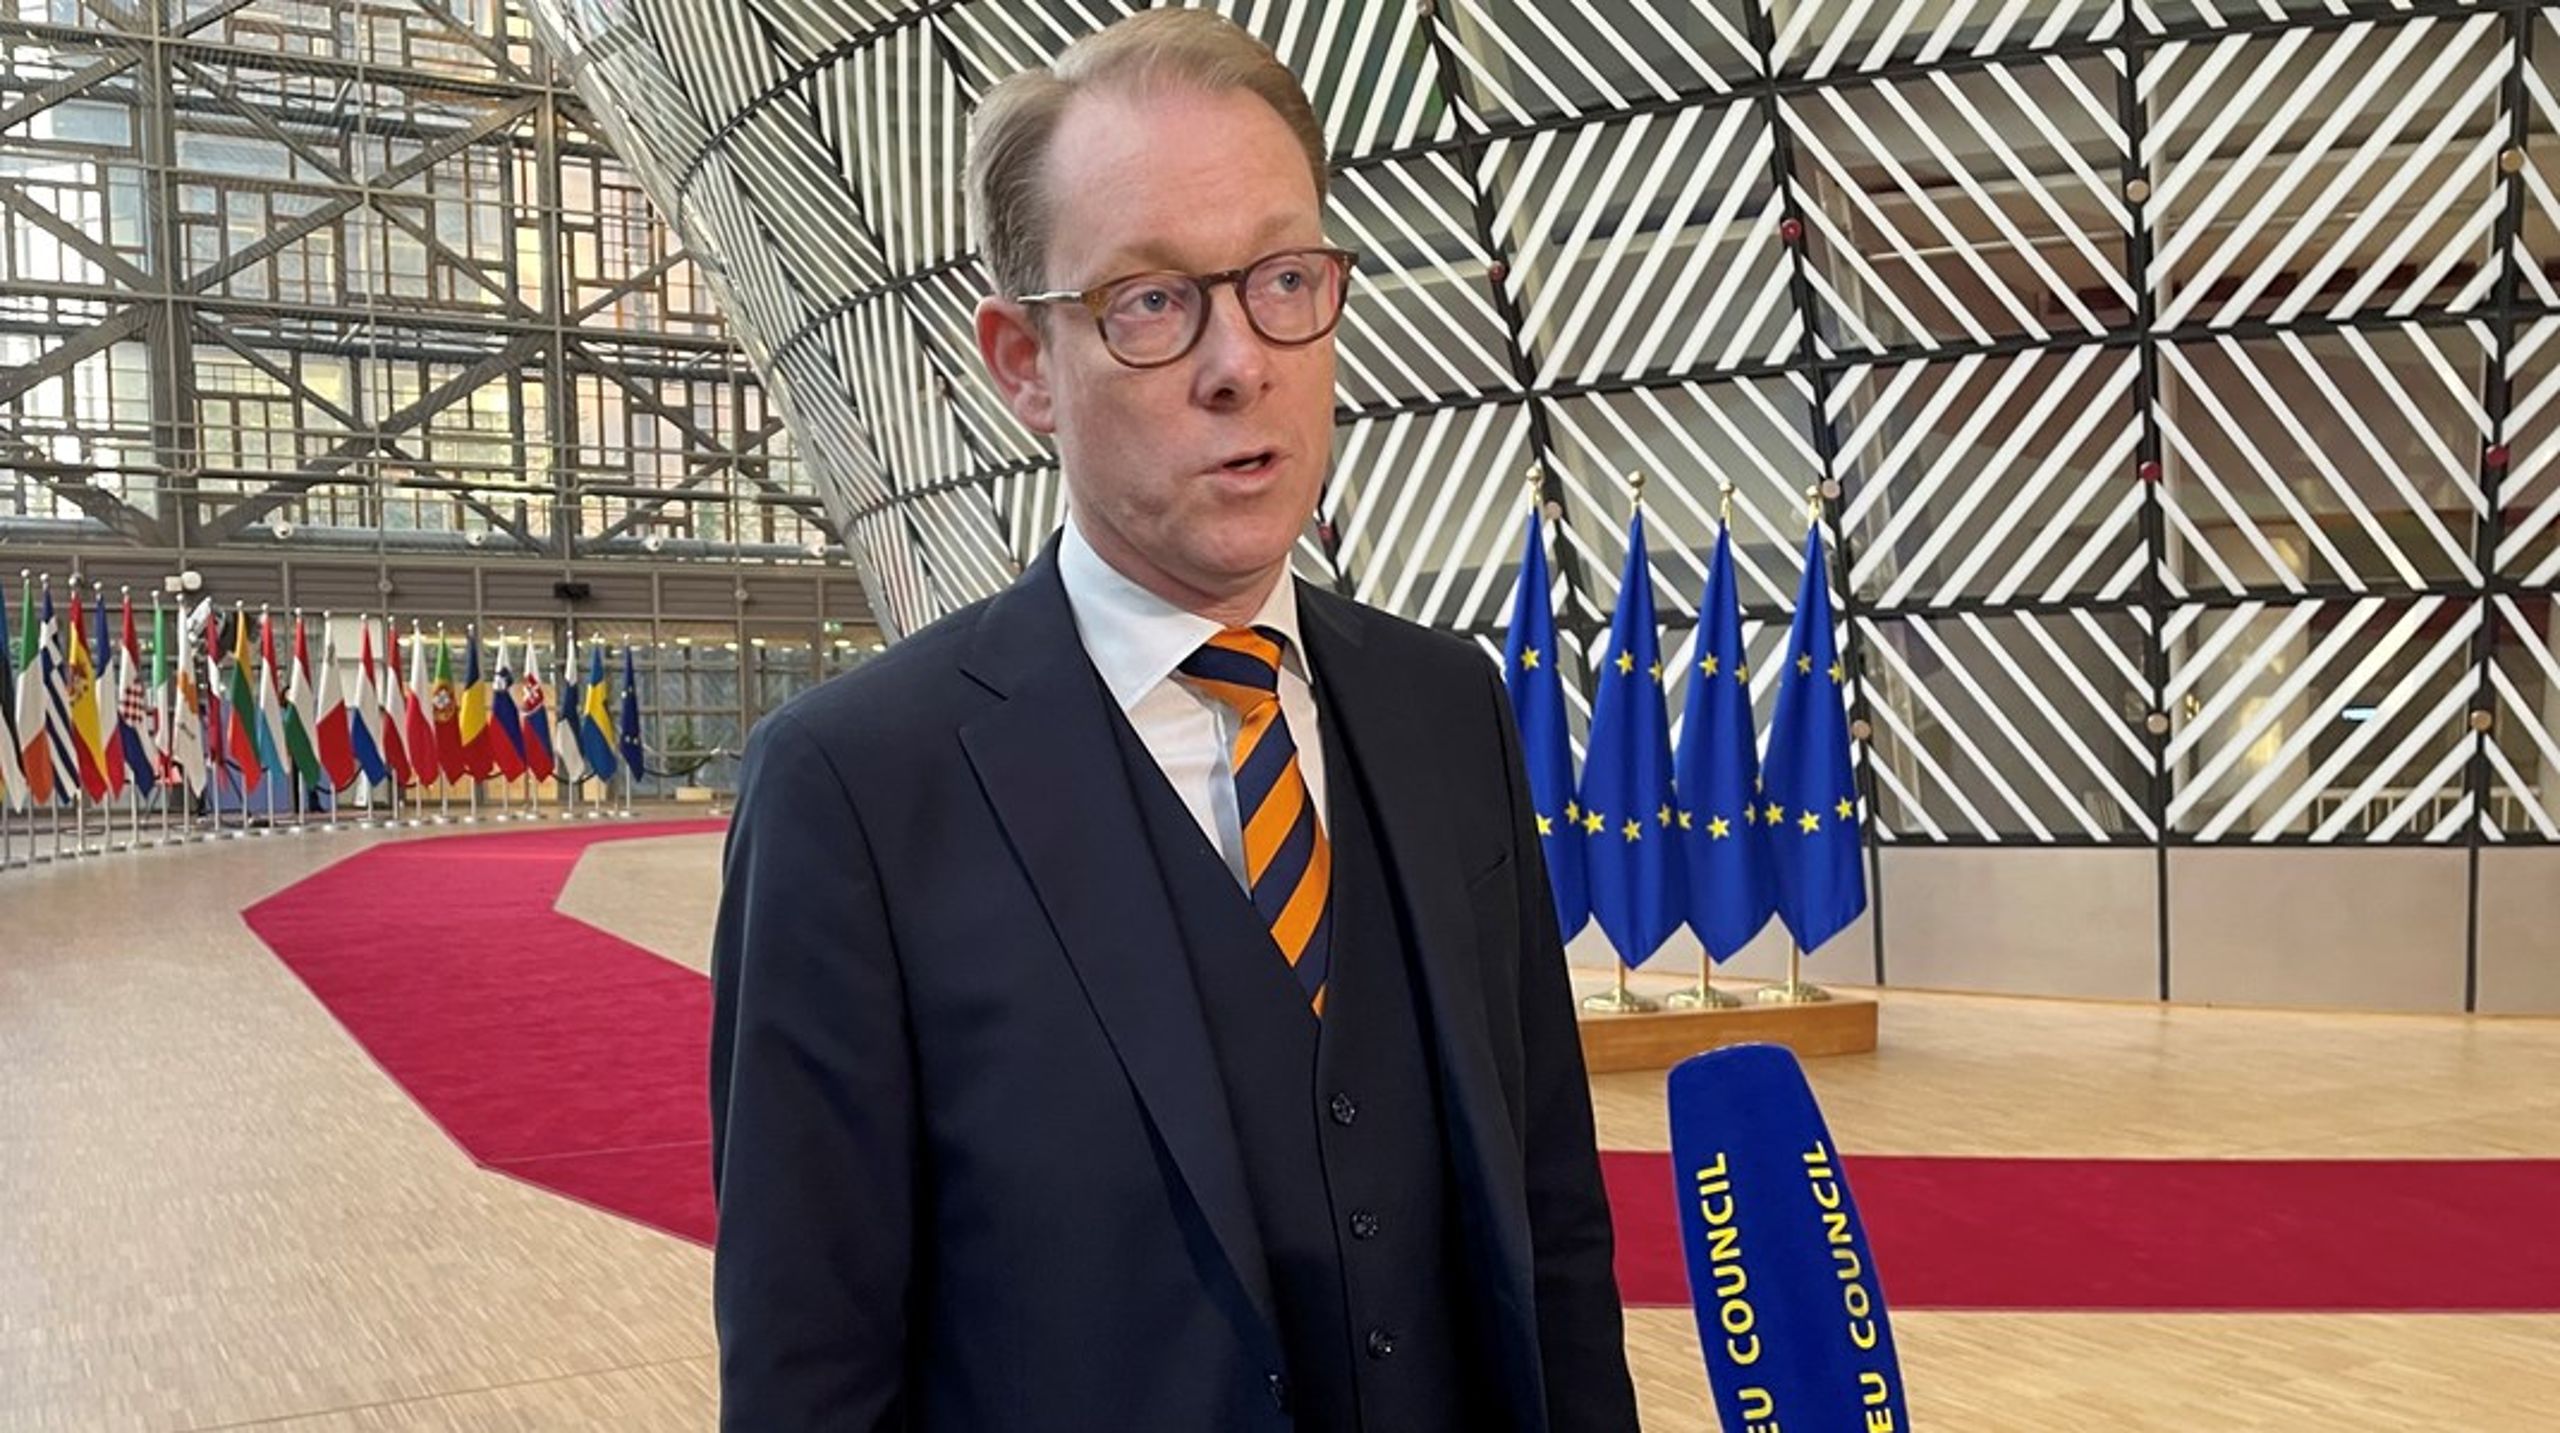 Utrikesminister Tobias Billström (M) skulle kunna initiera ett initiativ om att ta fram förslag om kännbara sanktioner mot Iran, skriver debattören.